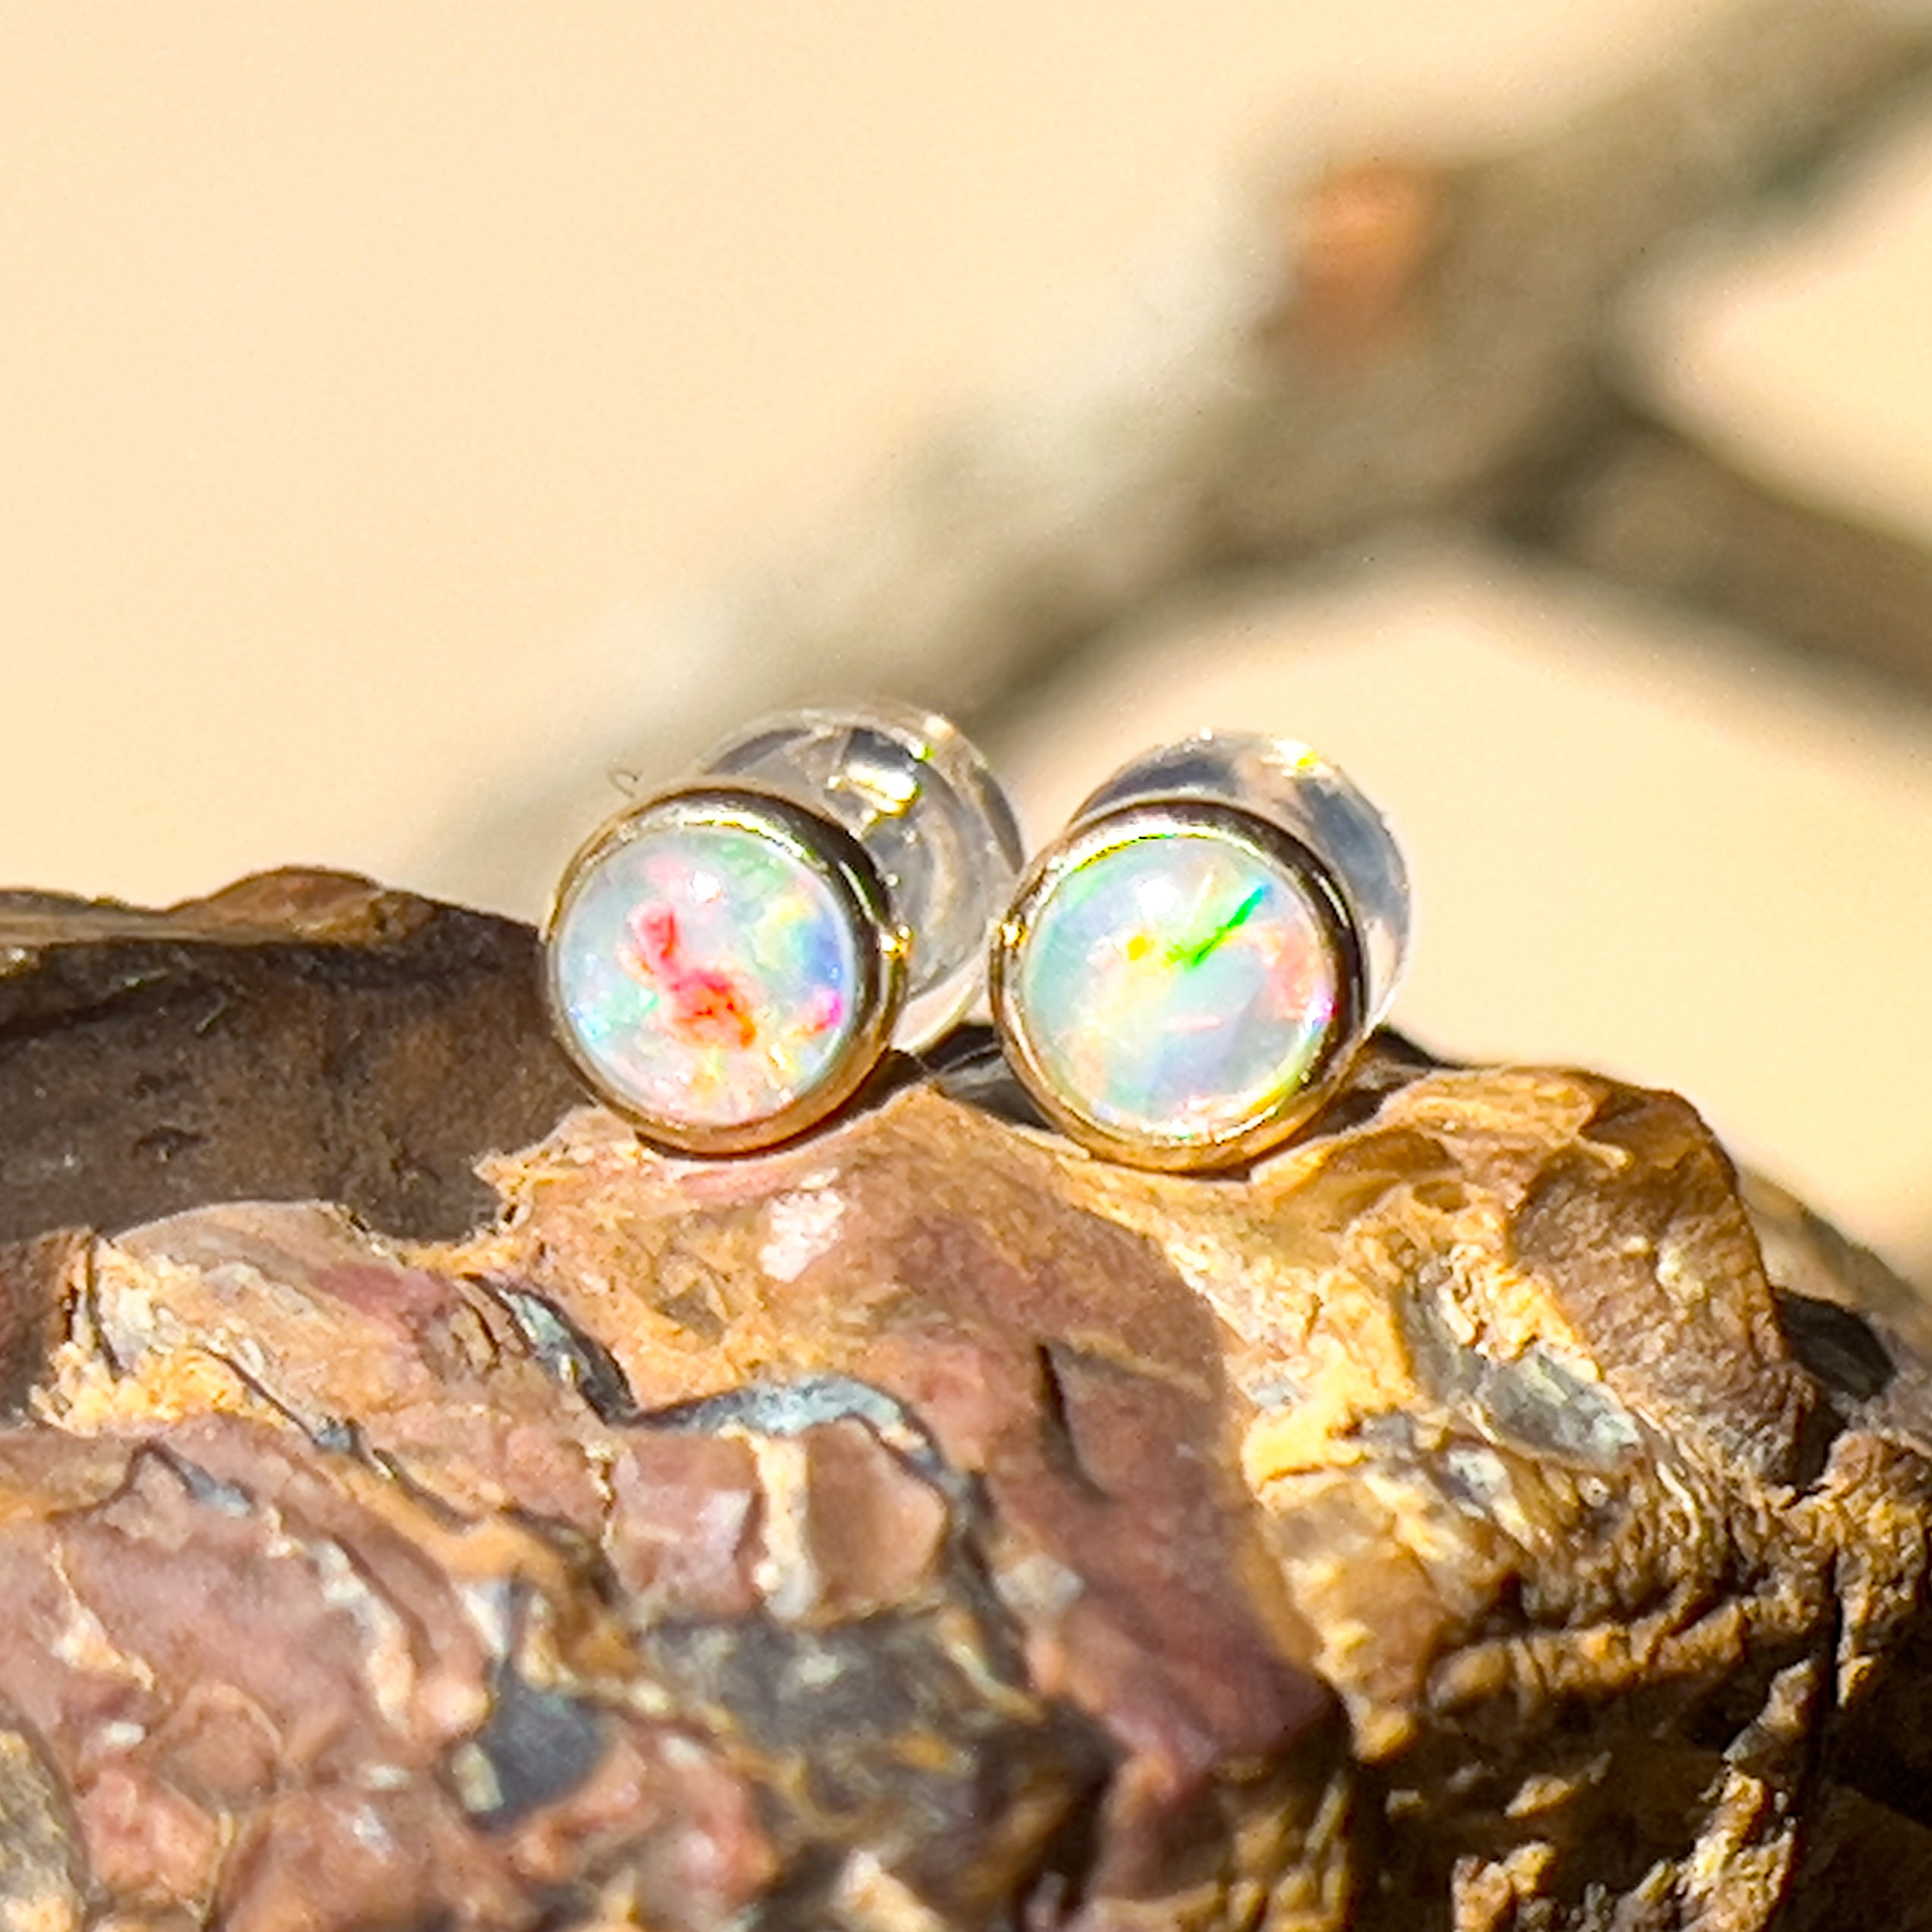 9kt Yellow Gold 3.5mm Crystal Opal earrings bezel studs - Masterpiece Jewellery Opal & Gems Sydney Australia | Online Shop